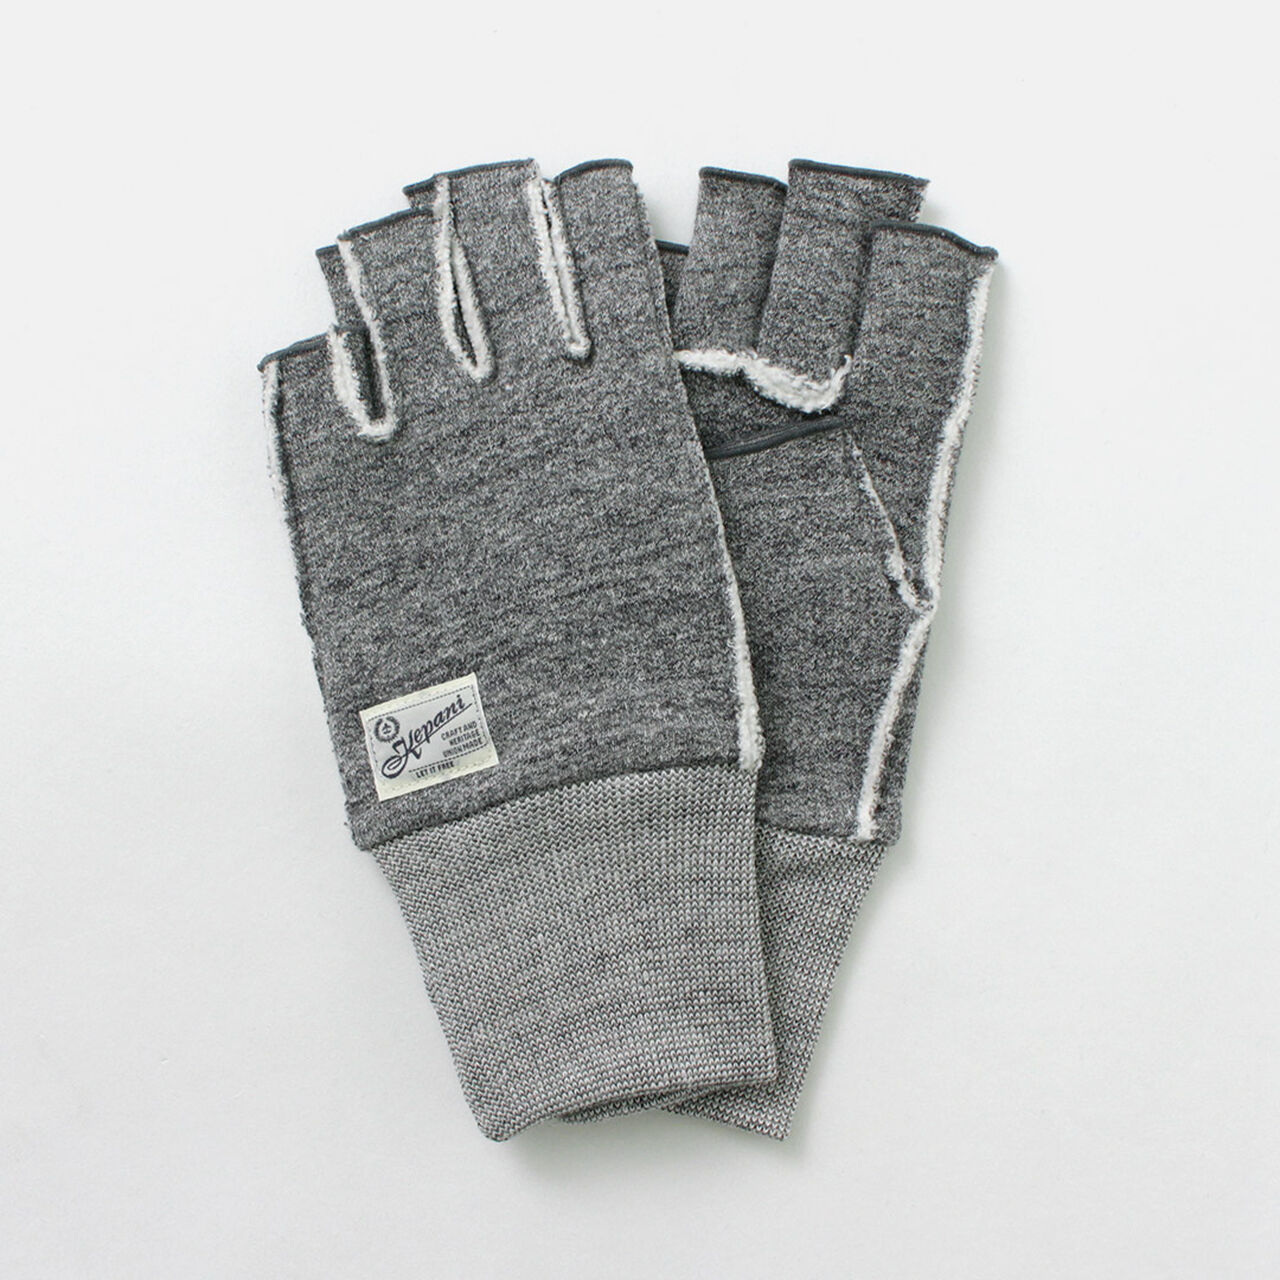 Saguaro-3 Sweat Cutoff Gloves,, large image number 0